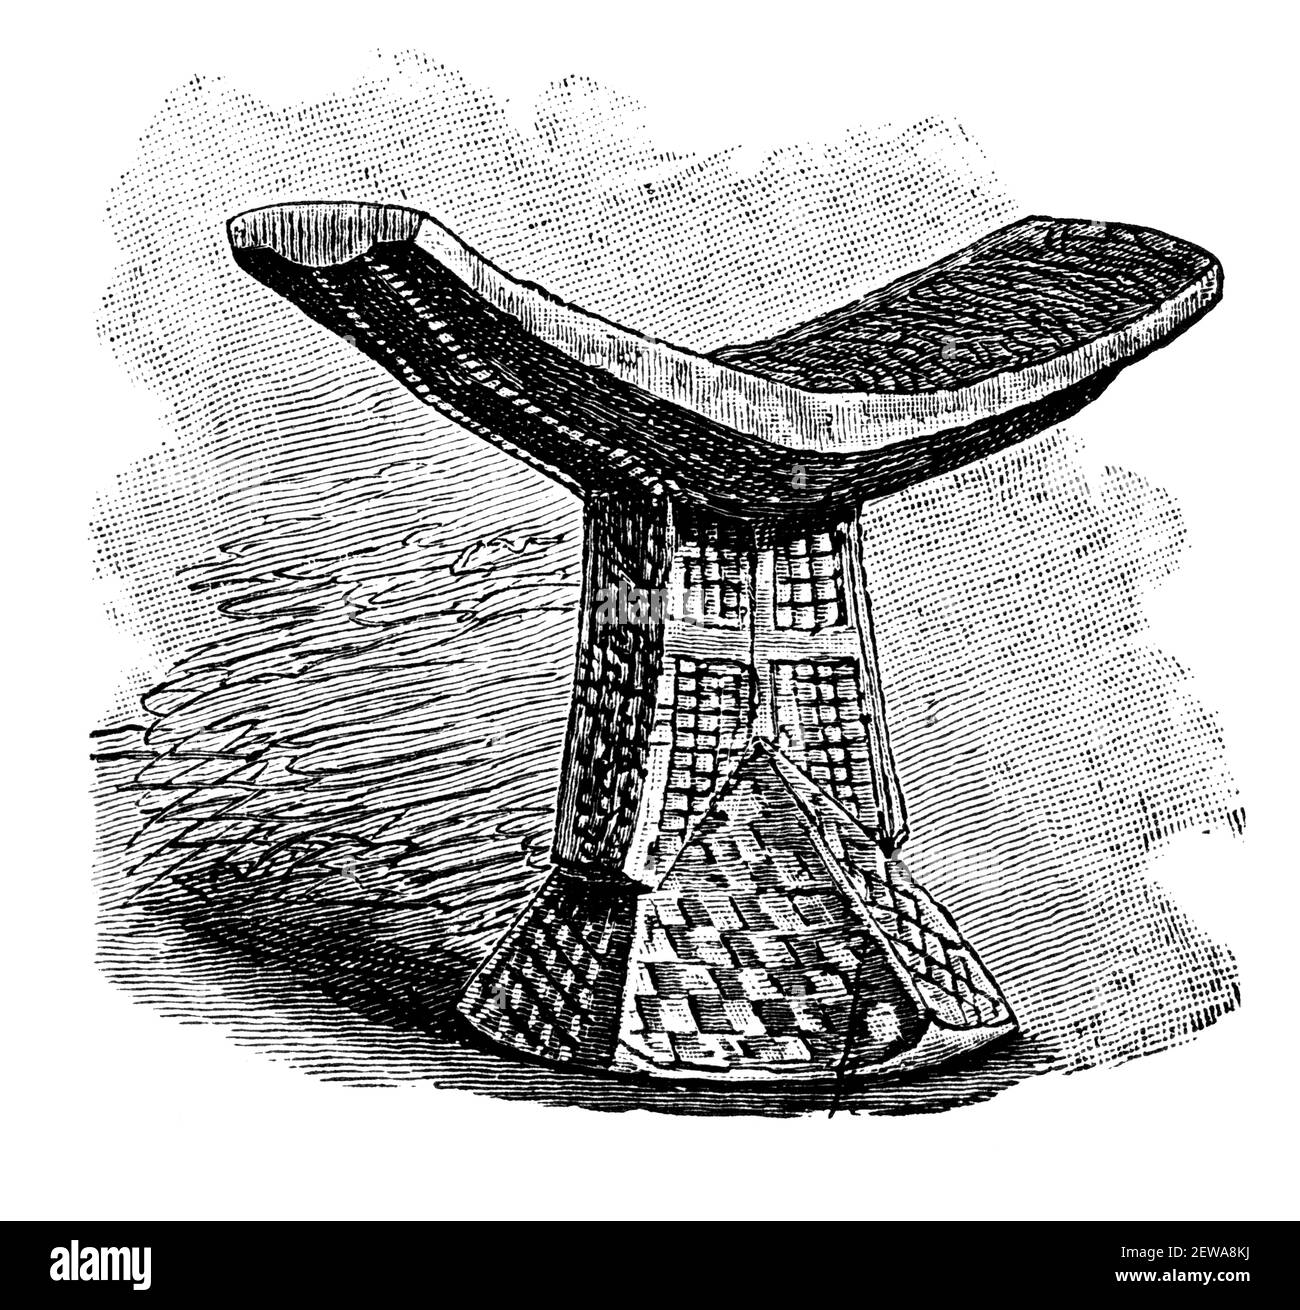 Titular De La Cabeza Somalí Cultura E Historia De África Ilustración Antigua En Blanco Y Negro 0871